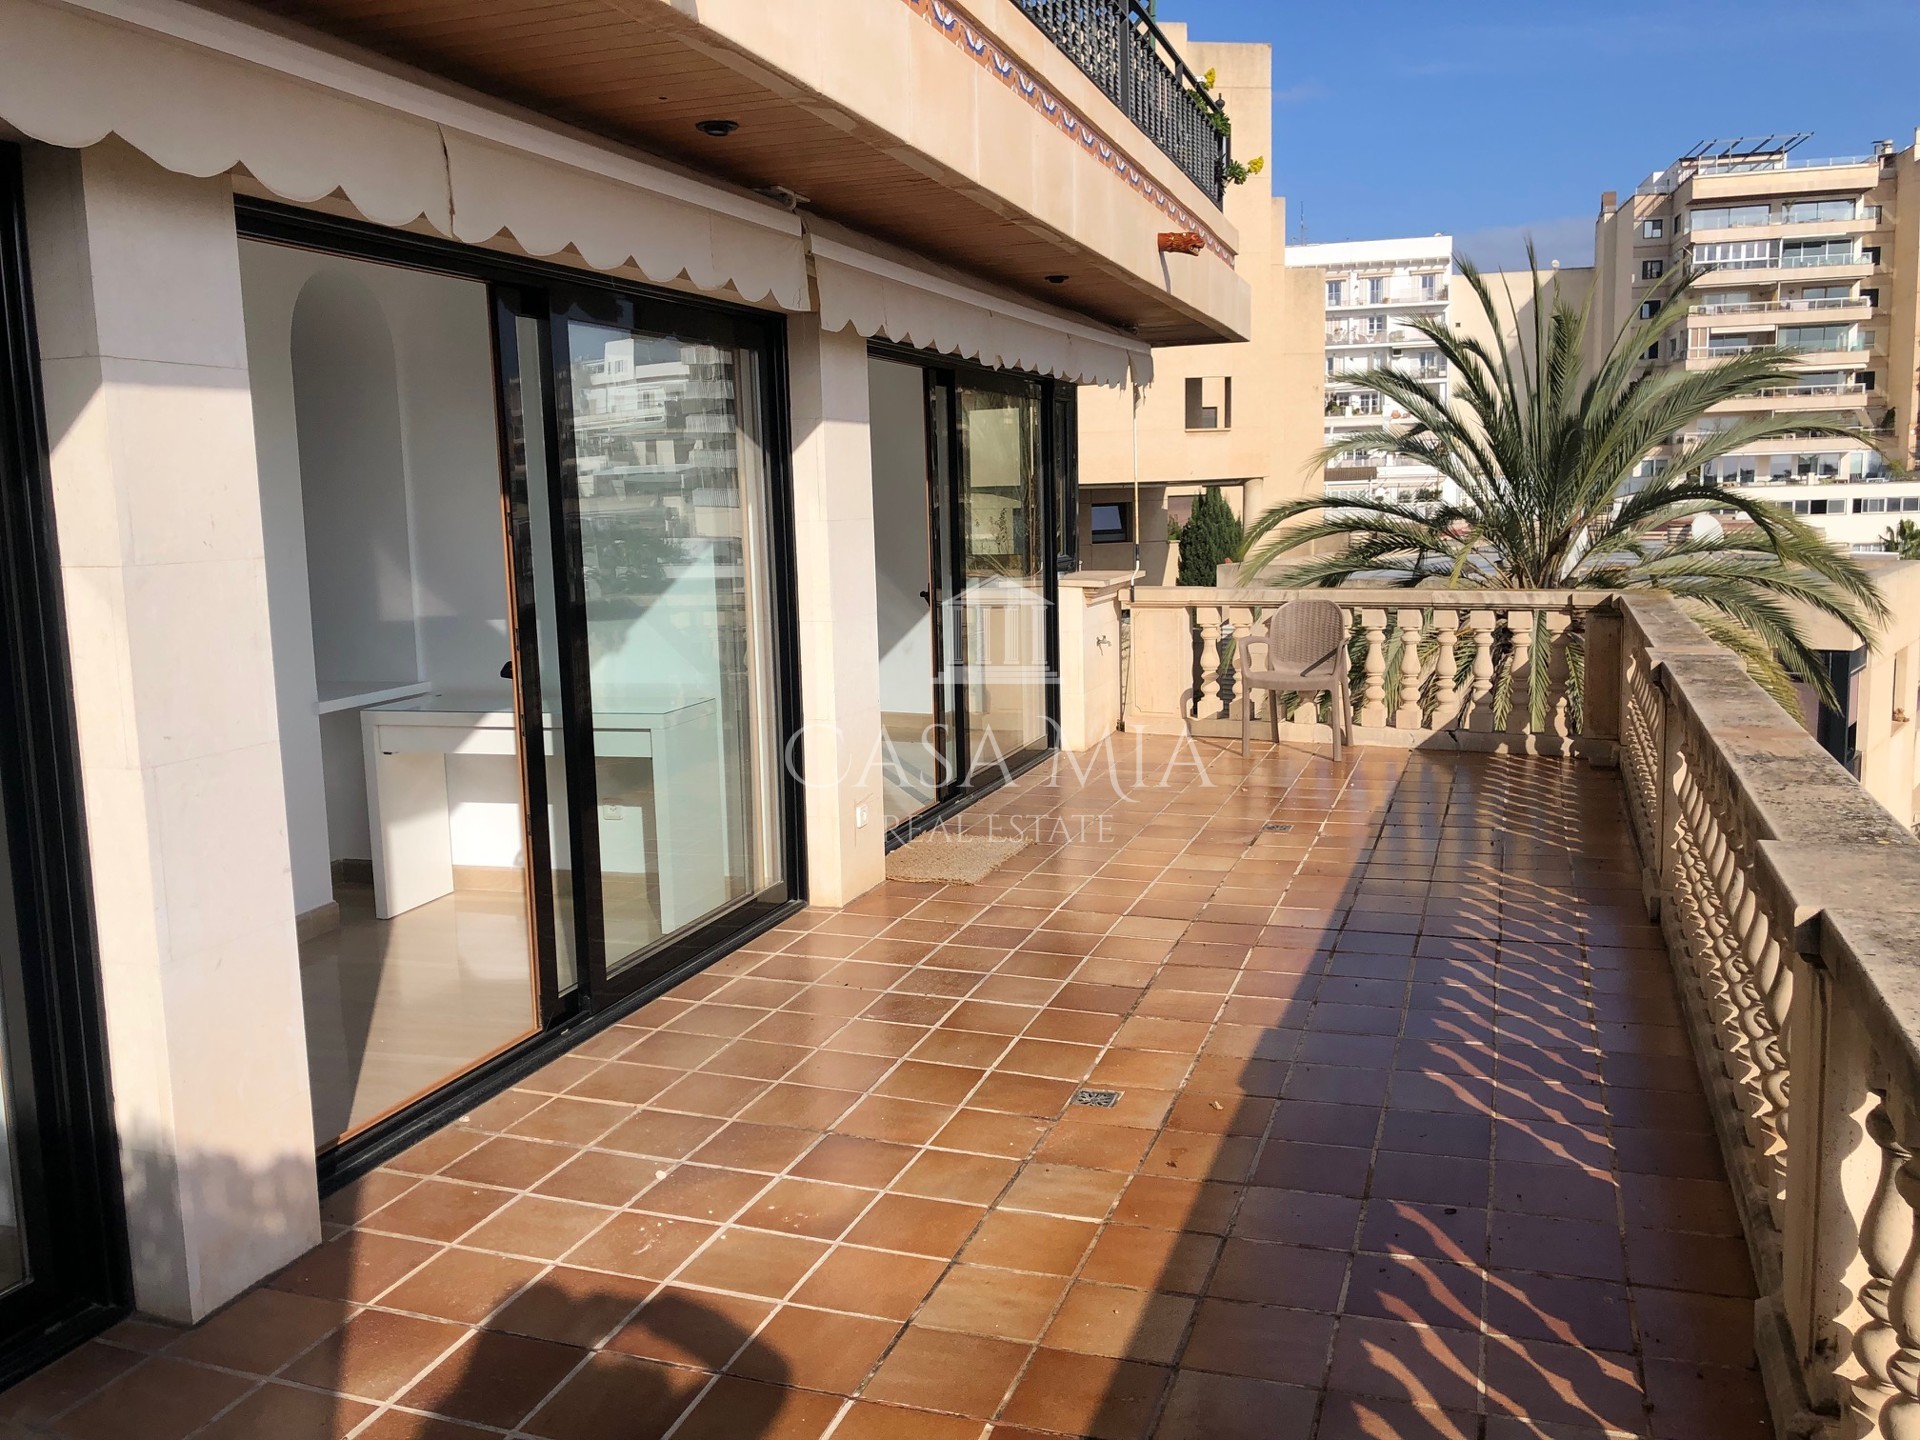 Bel appartement avec vue sur la mer dans le port de Can Barbara, Palma